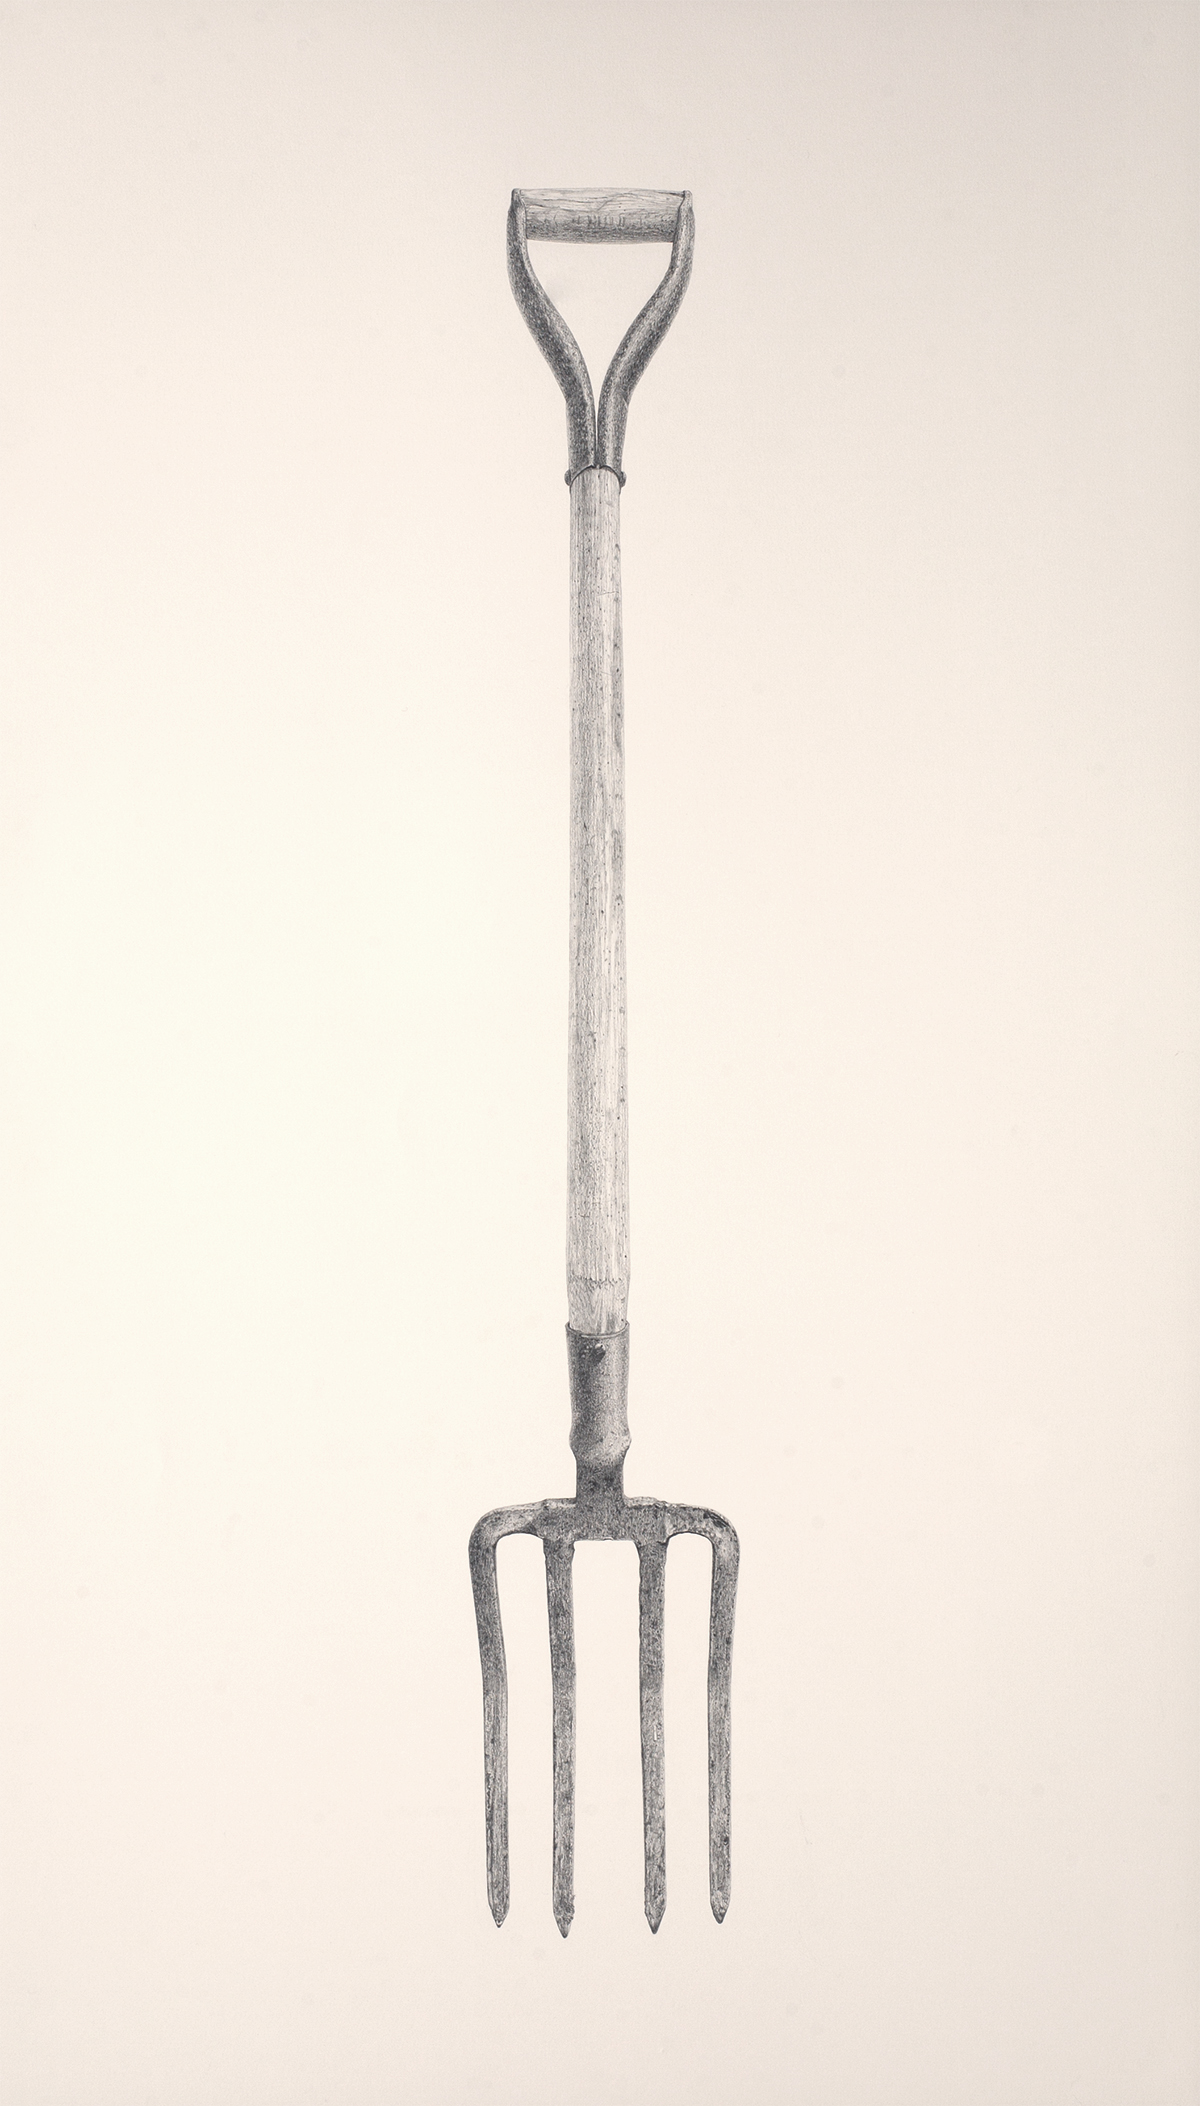 o.T. / Bleistift auf Papier (pencil on paper) / 80 x 140 cm / 2011